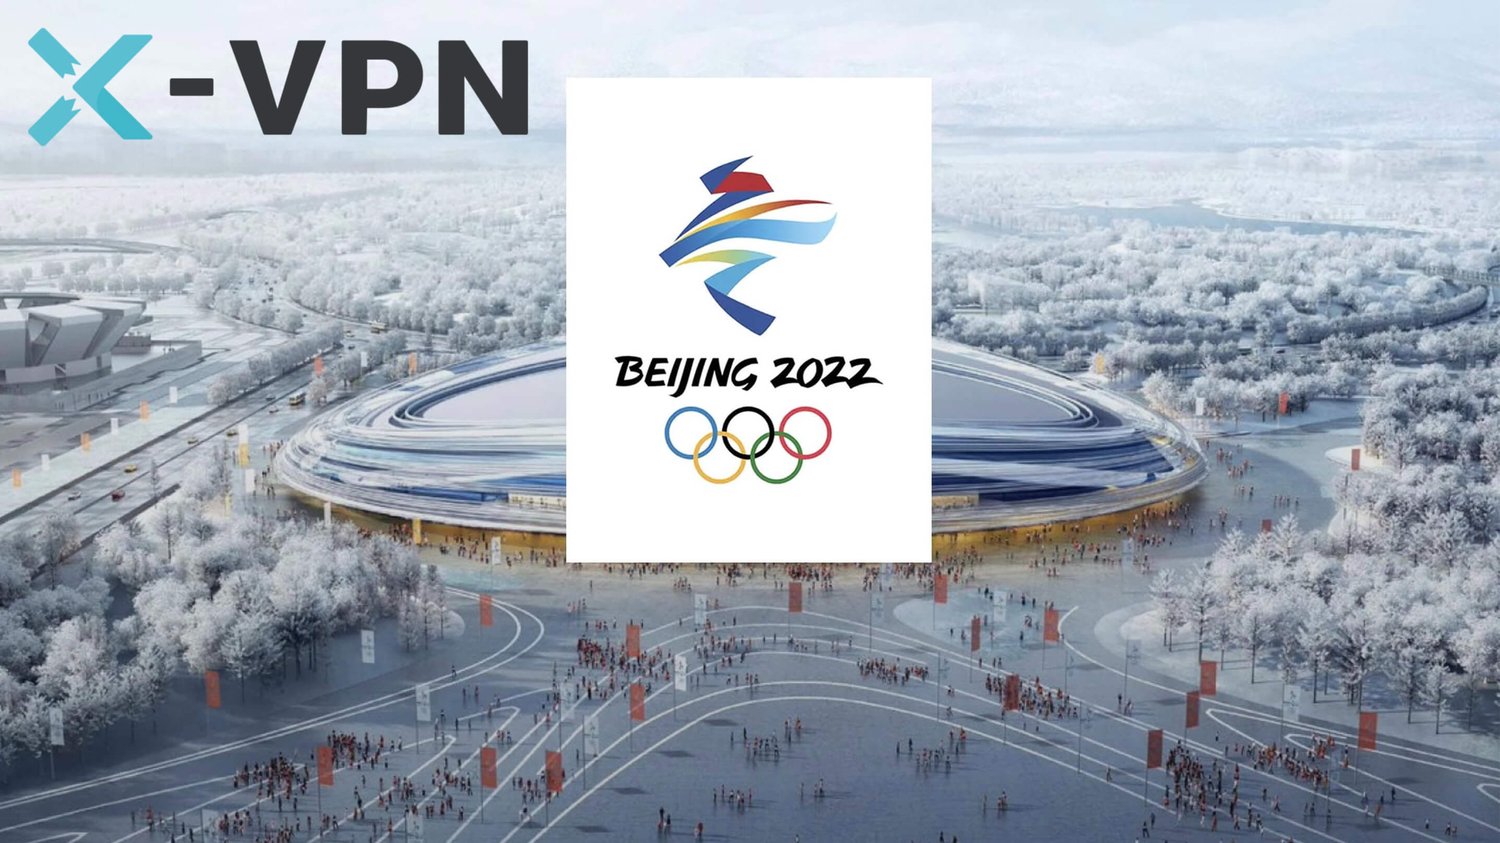 Leitfaden für die bevorstehenden Finals bei den Olympischen Spielen in Peking 2022